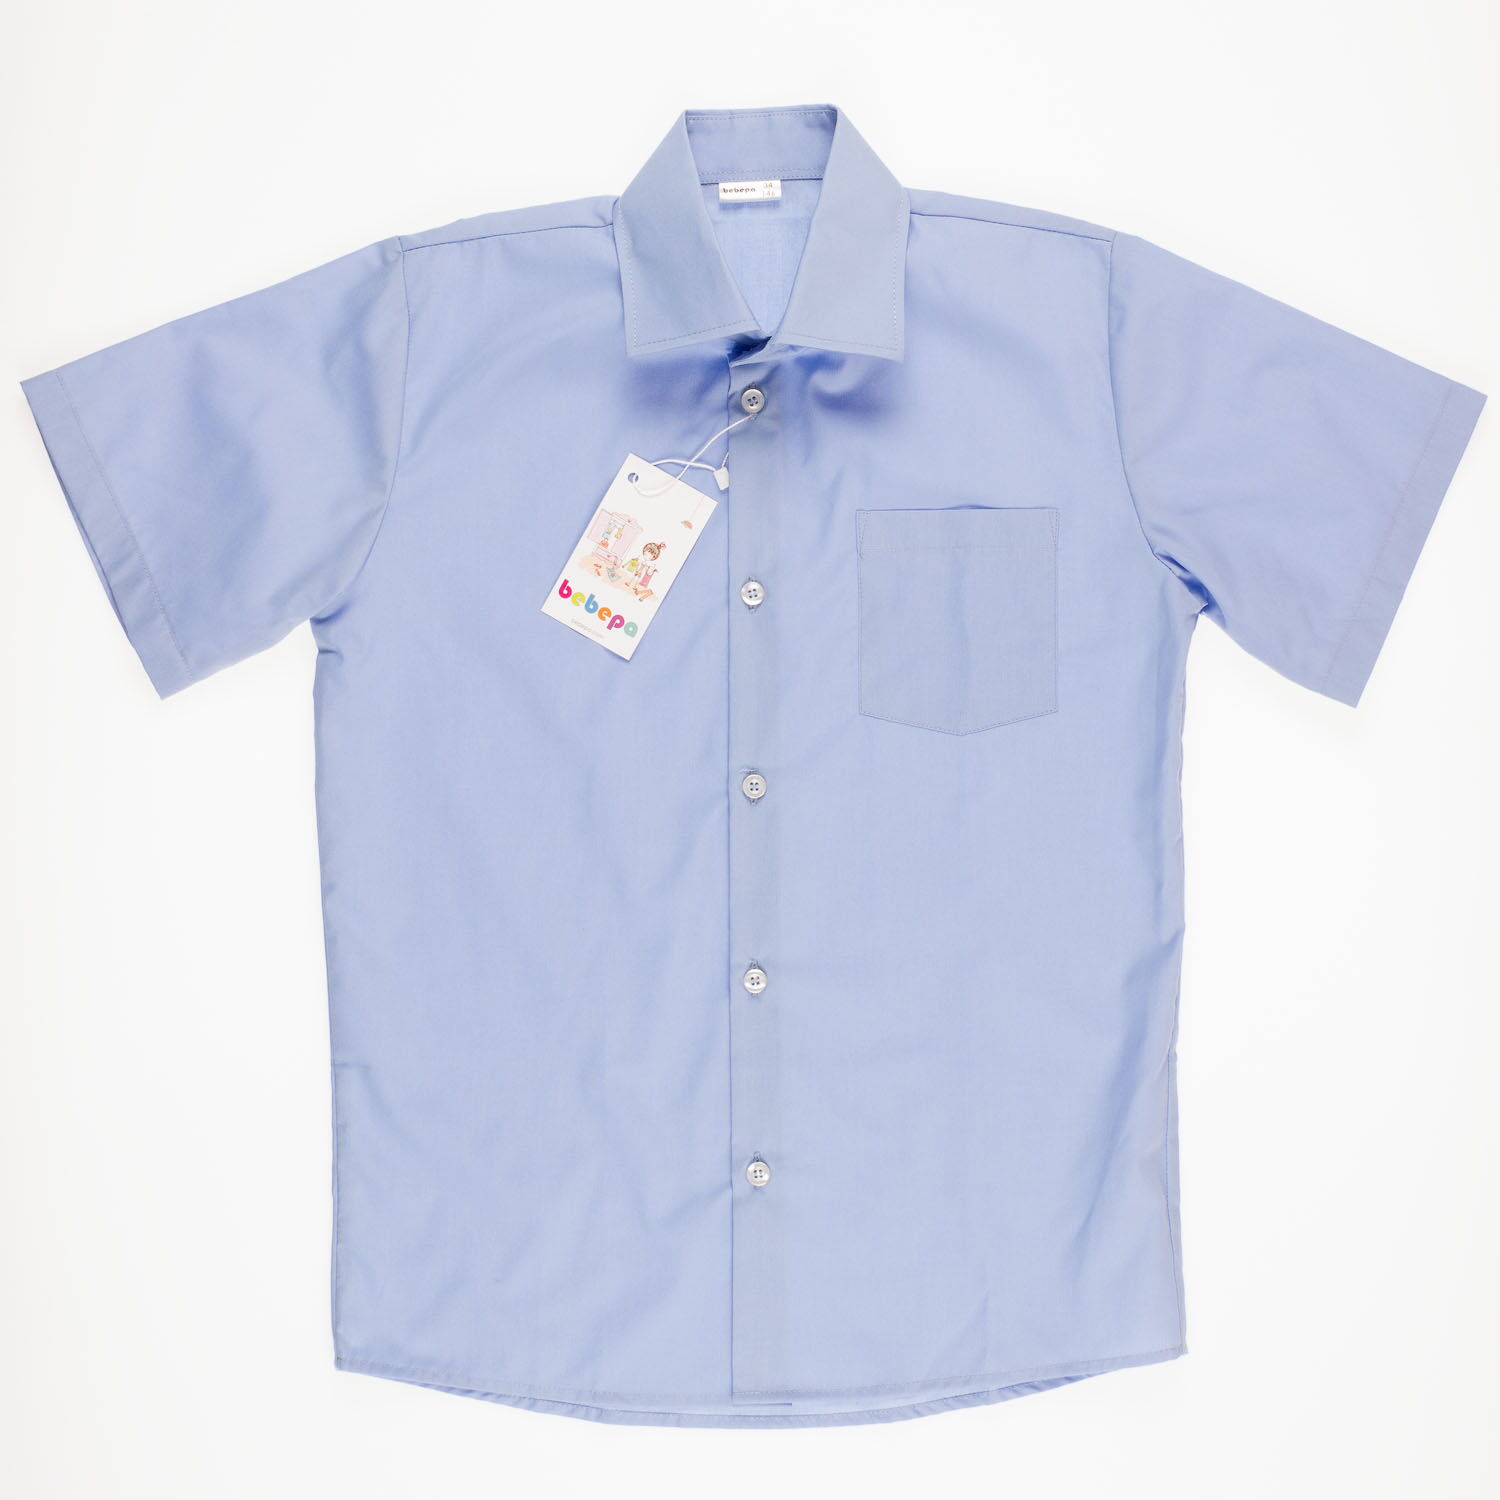 Рубашка с коротким рукавом для мальчика Bebepa синяя 1105-017 - размеры